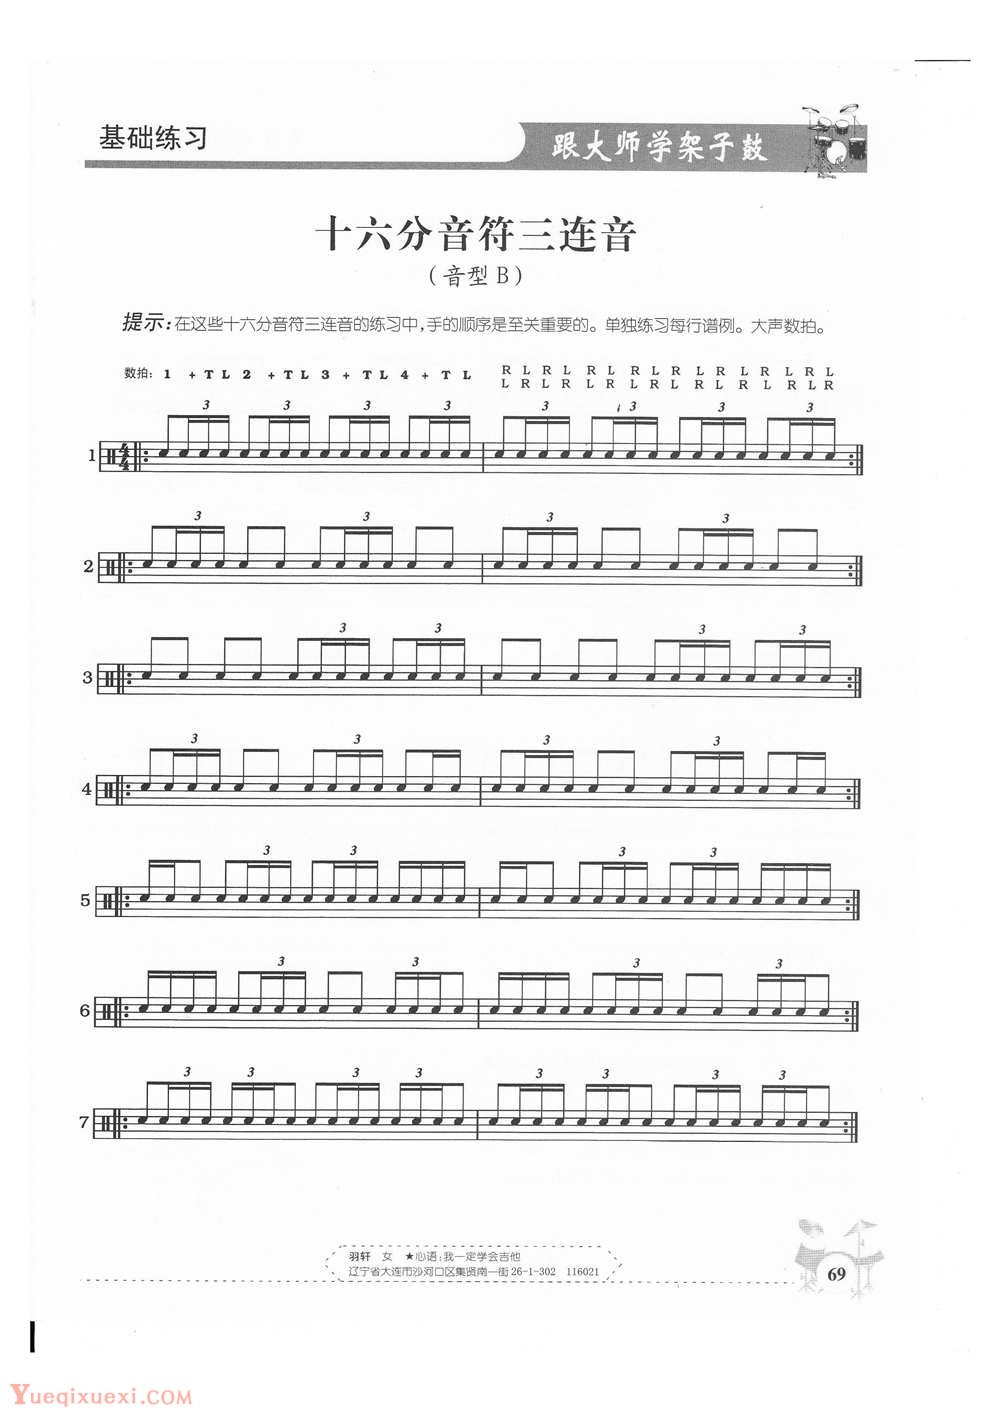 架子鼓基础练习 十六分音符三连音(音型B)